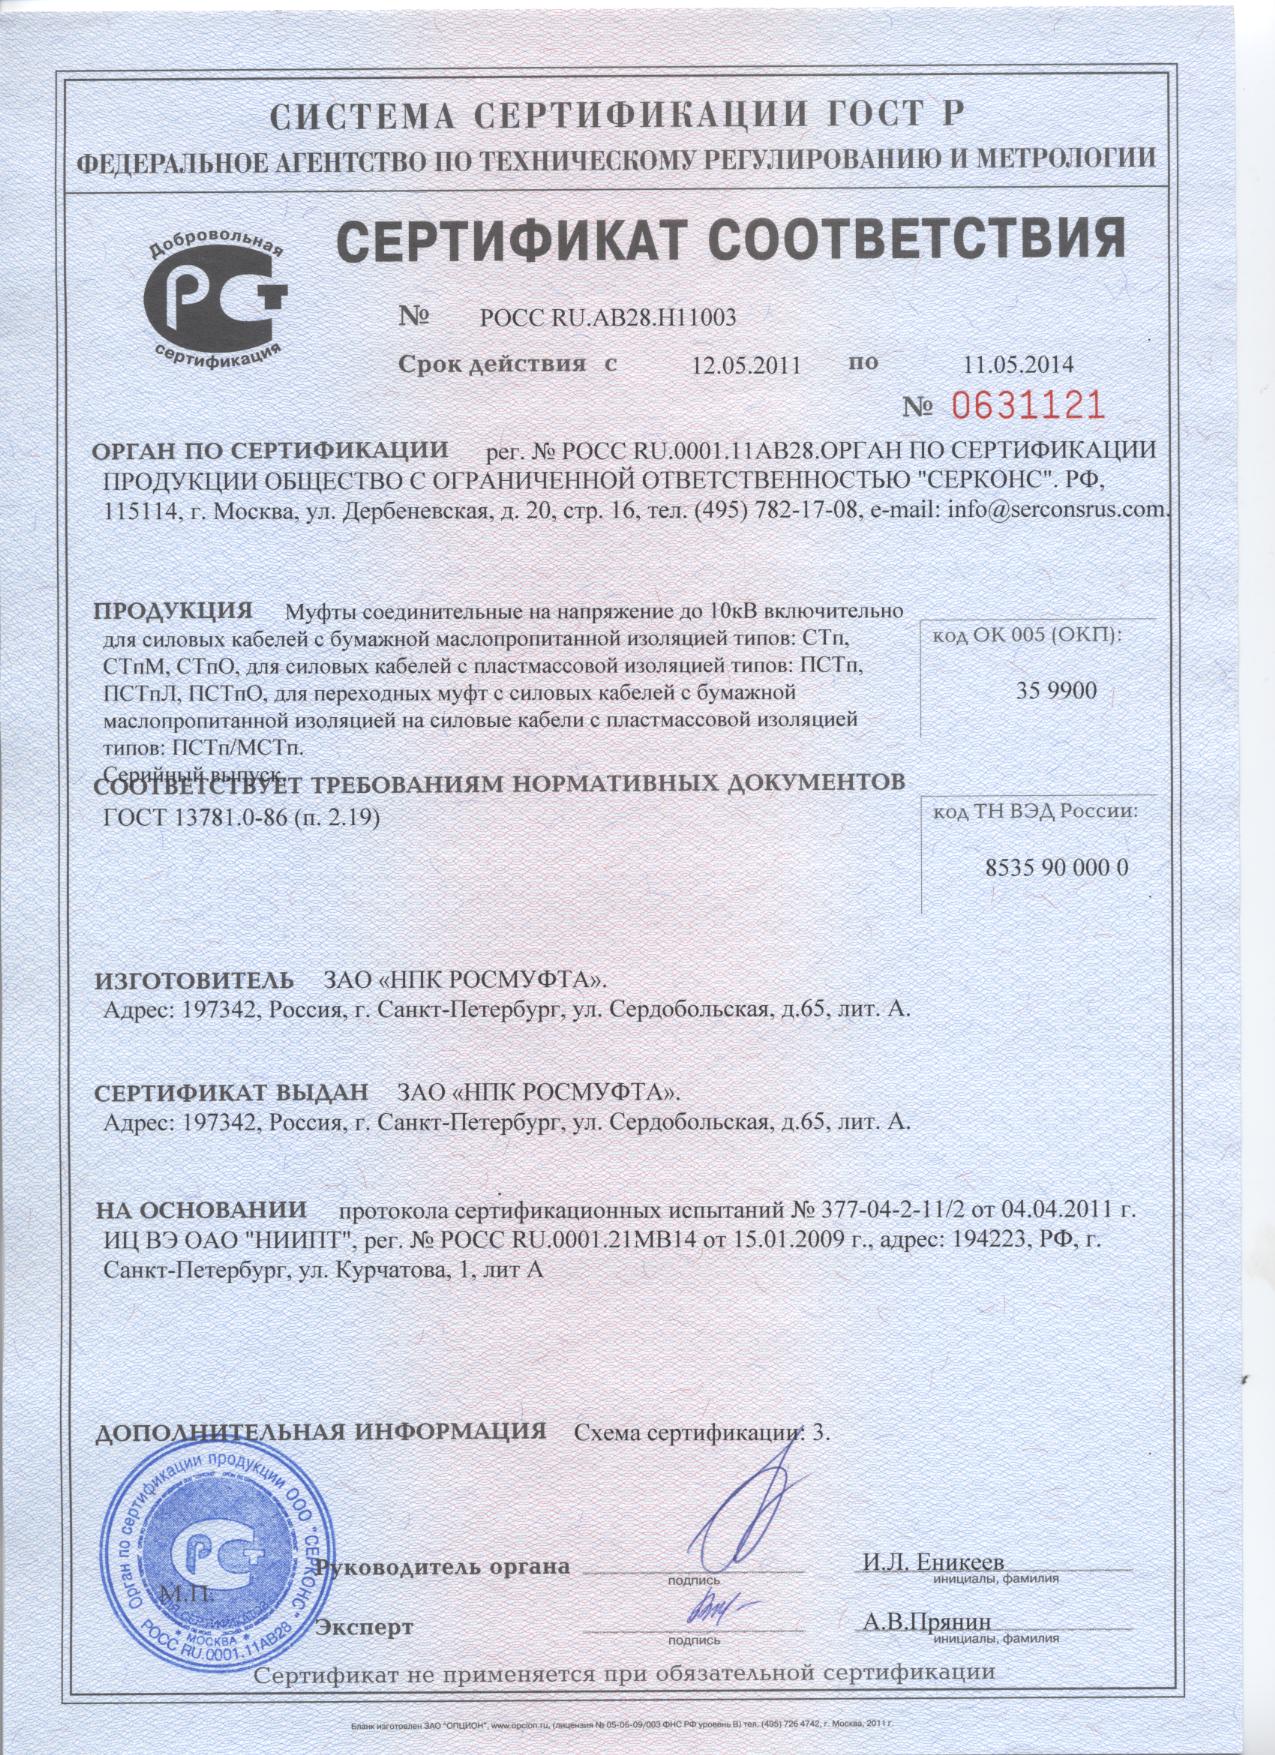 Сертификат соответствия (2011-2014)